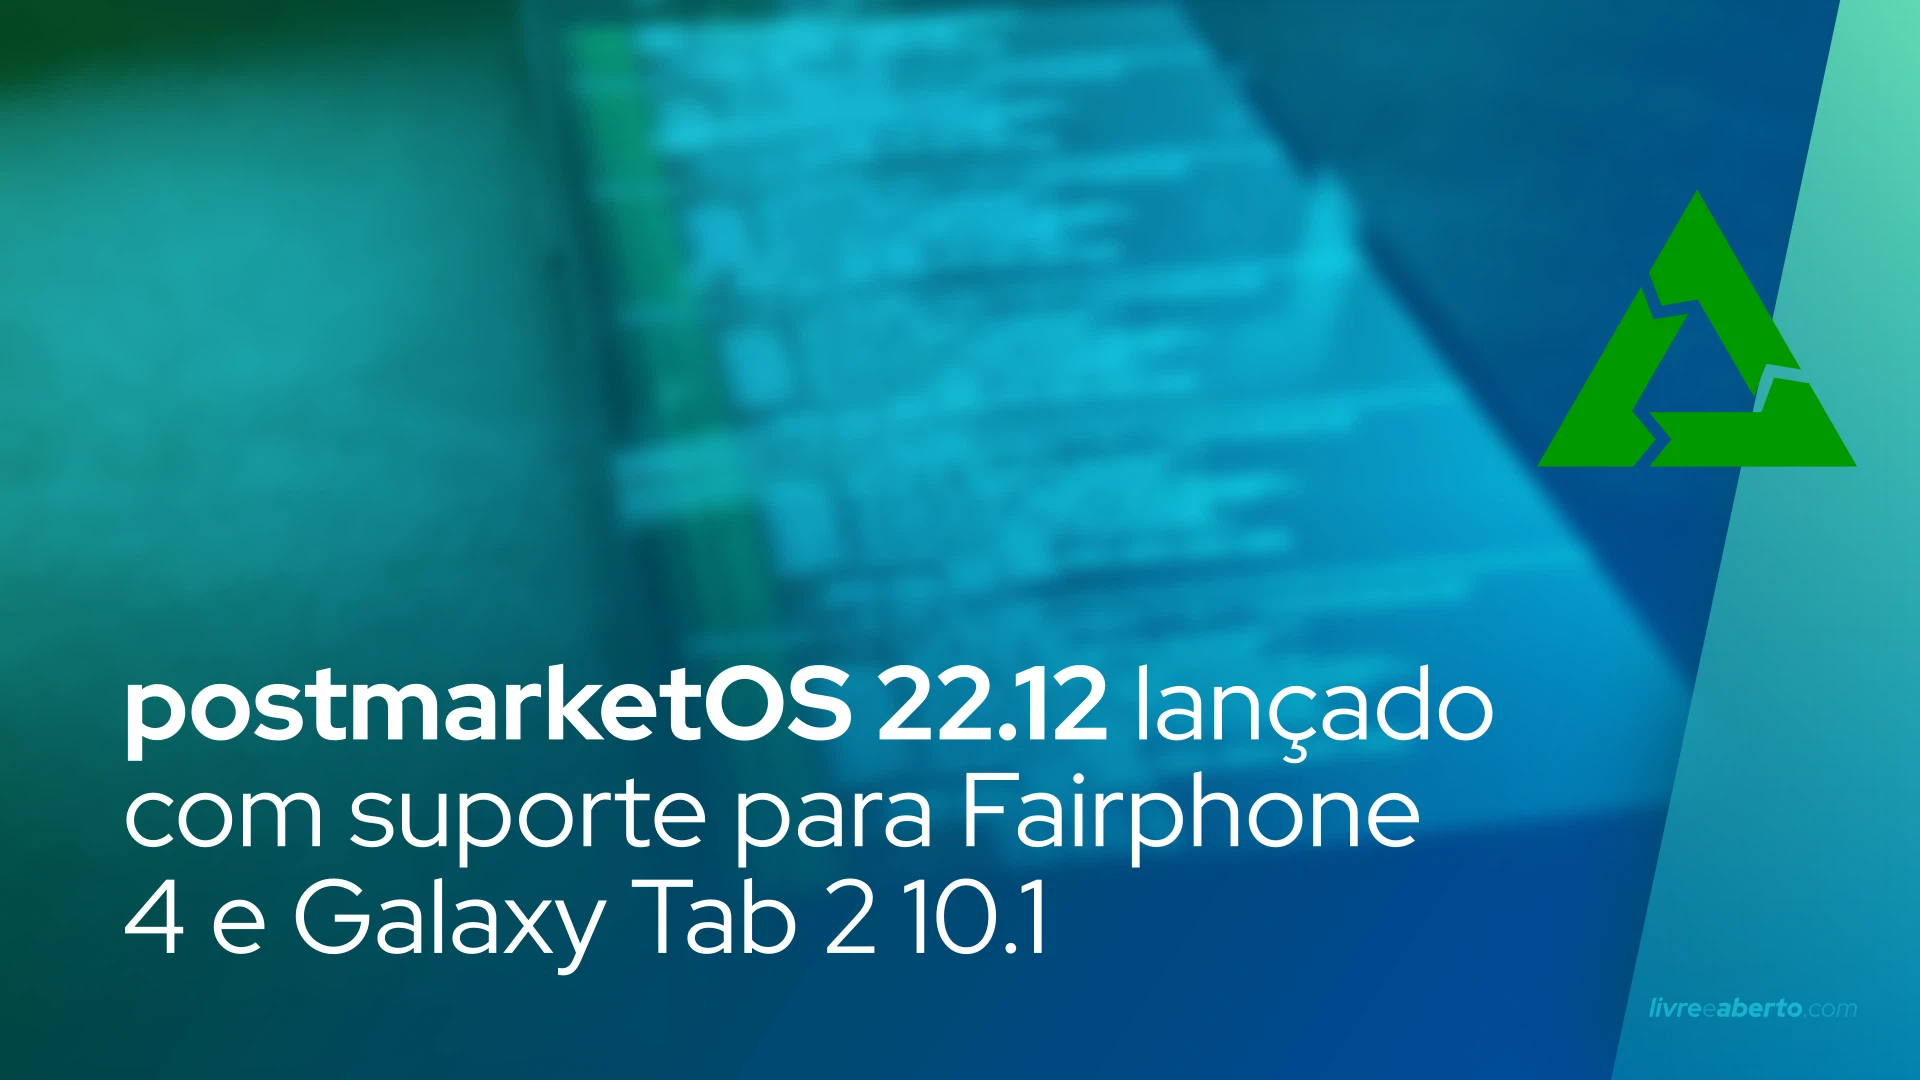 postmarketOS 22.12 lançado com suporte para Fairphone 4 e Galaxy Tab 2 10.1